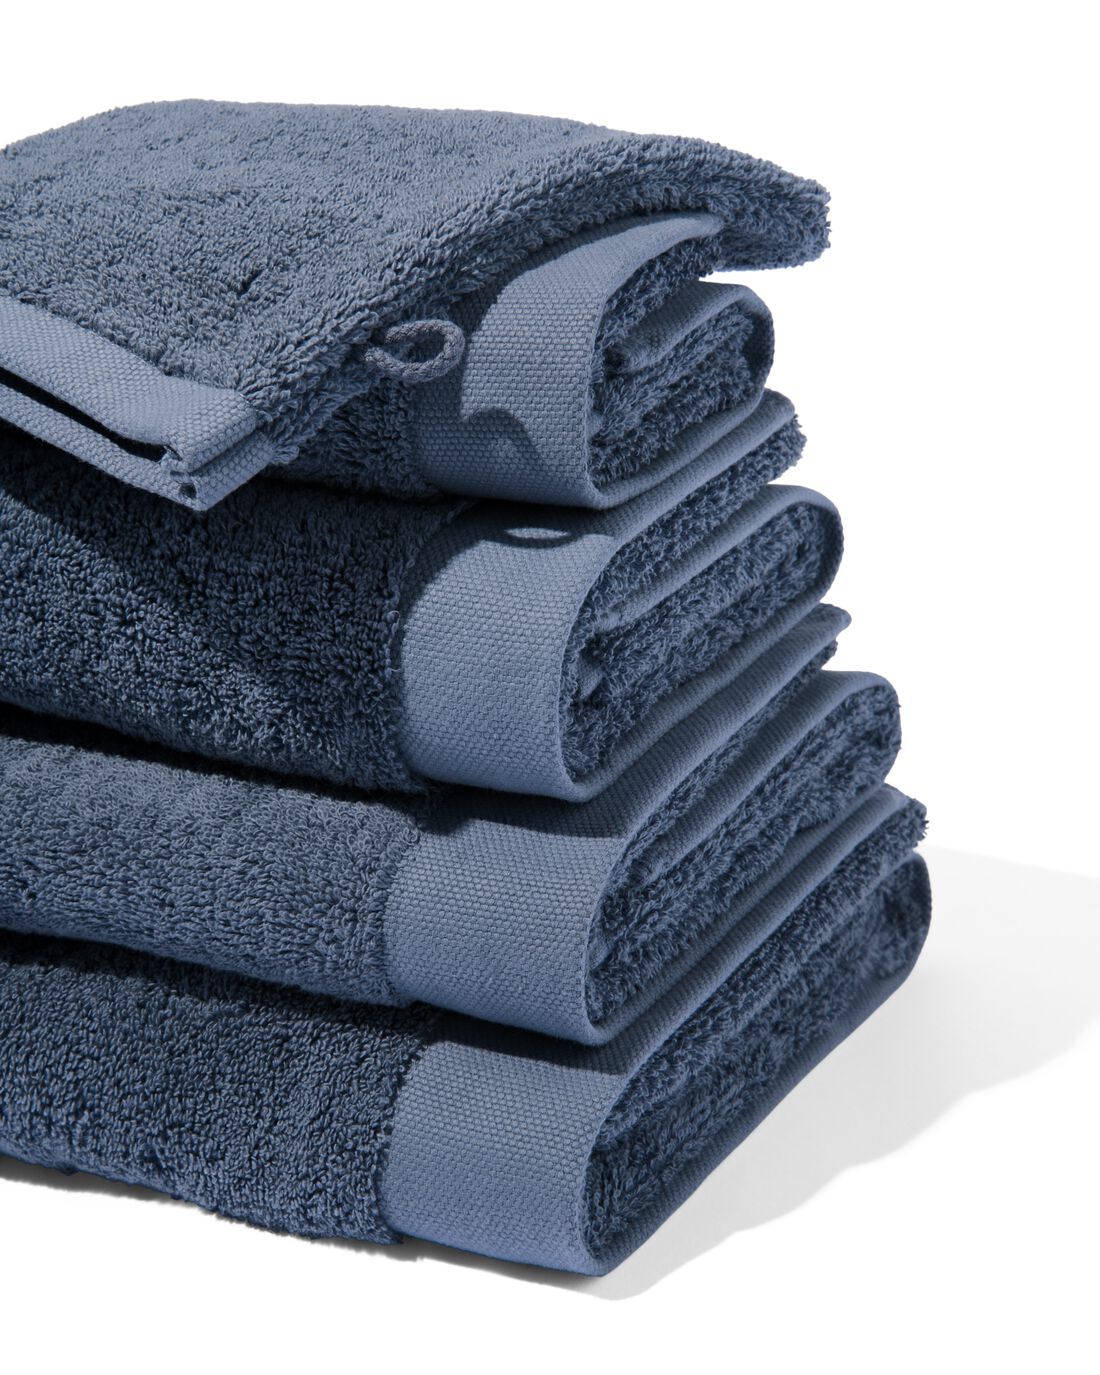 HEMA Handdoeken Hotel Extra Zacht Middenblauw (middenblauw)